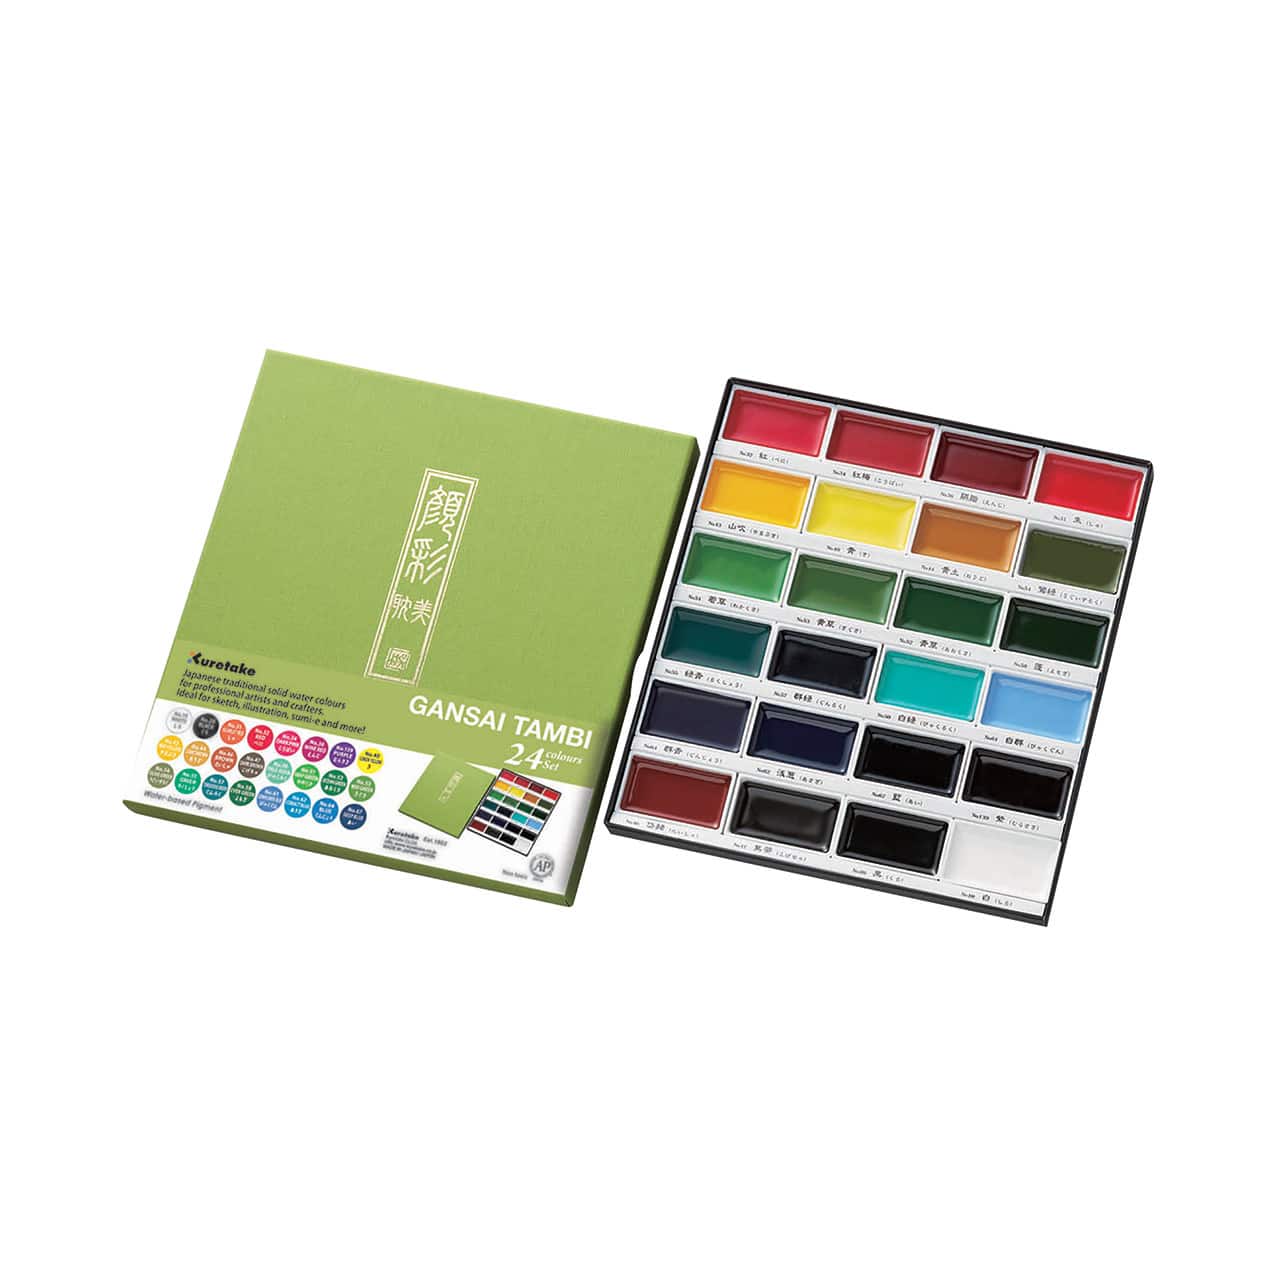 Kuretake GANSAI TAMBI&#x2122; 24 Color Watercolor Set